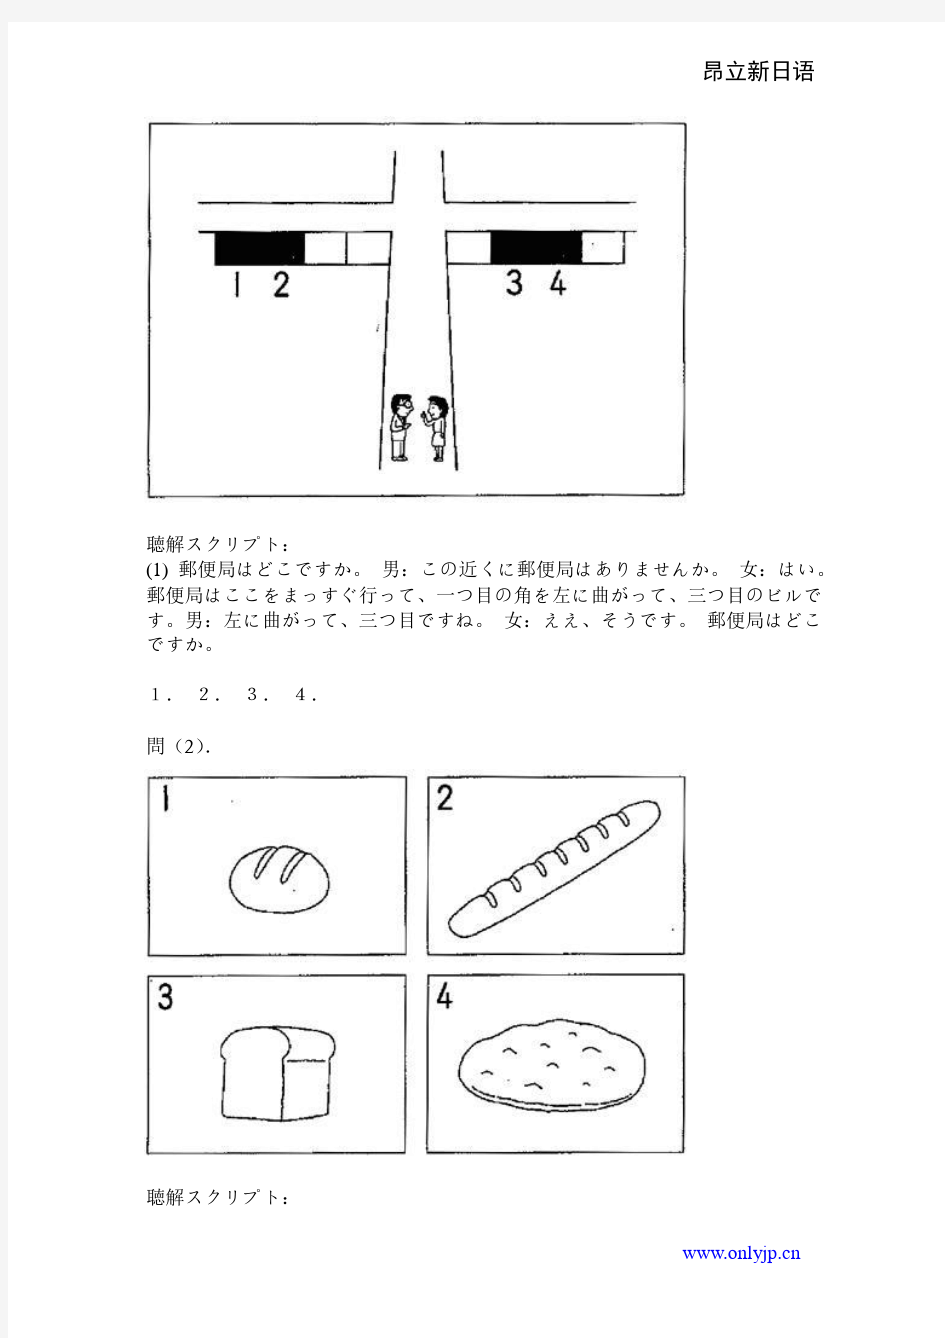 1993年日语能力考试3级真题-听力